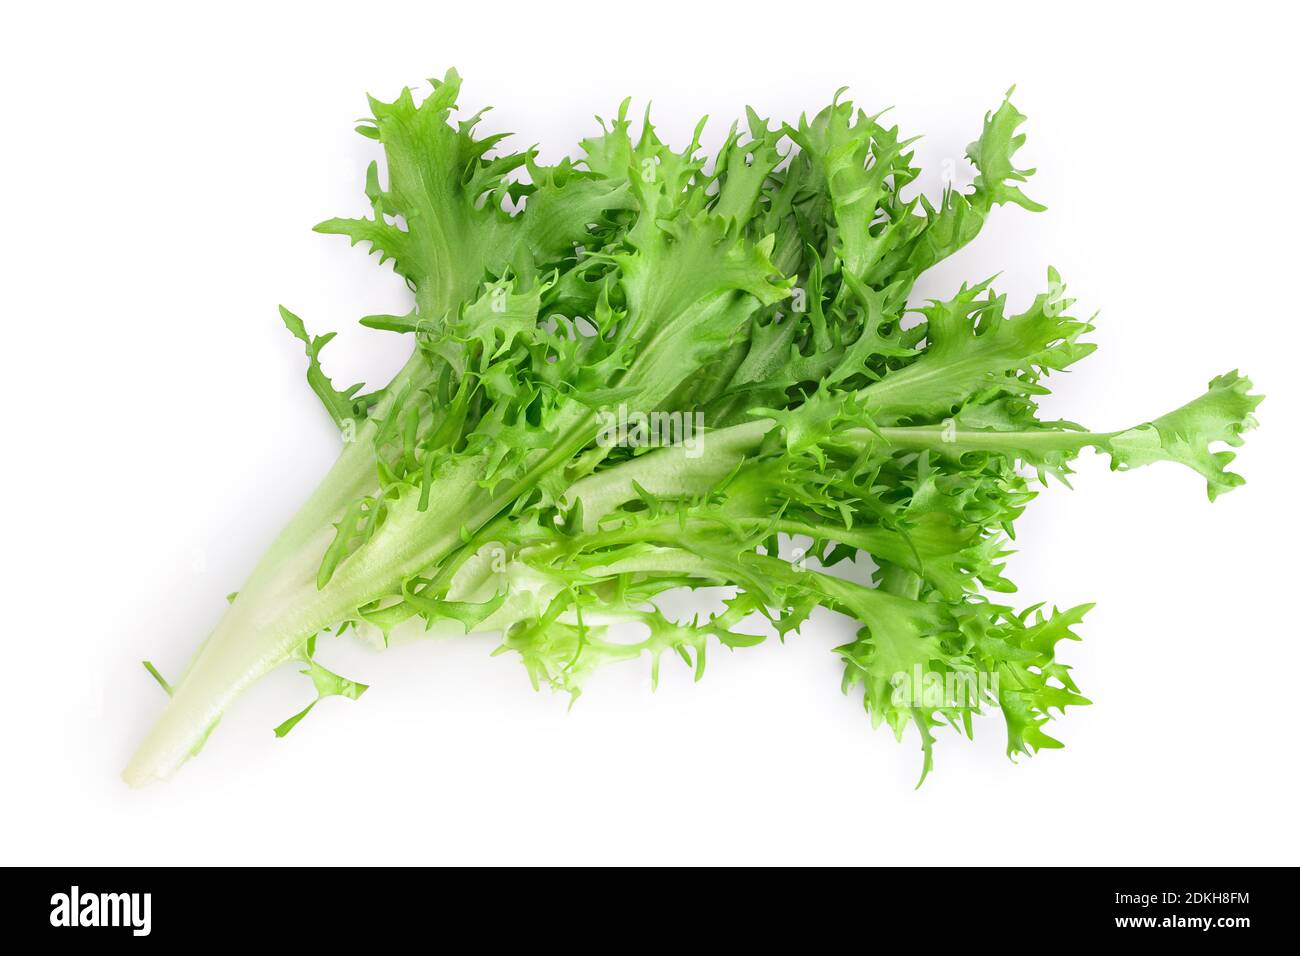 Frische grüne Blätter Endive Frisee Chicorée Salat isoliert auf weißem Hintergrund mit Clipping Pfad und volle Tiefe des Feldes, Draufsicht. Flach liegend. Stockfoto